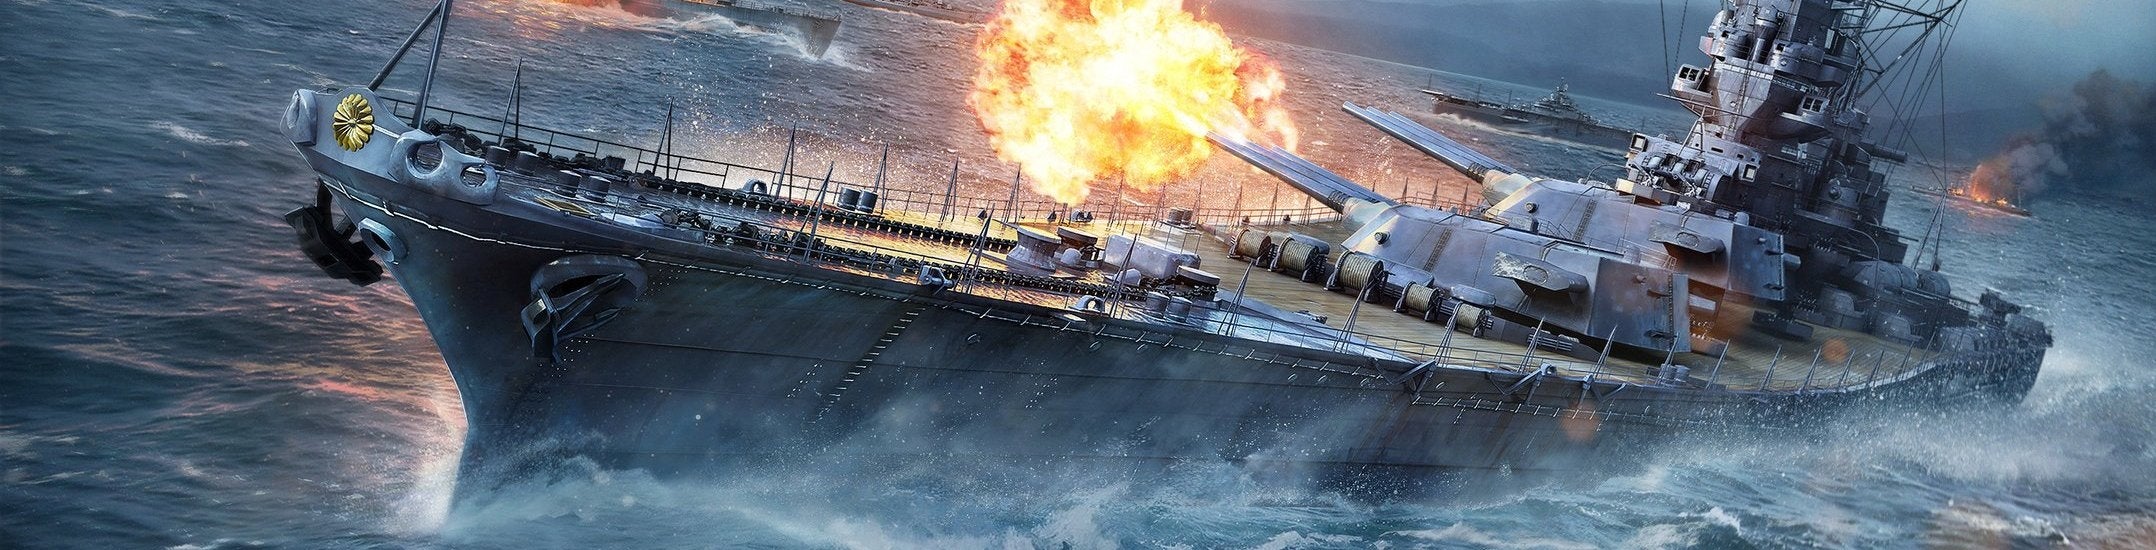 Immagine di World of Warships, battaglie navali come non se ne sono mai viste - recensione